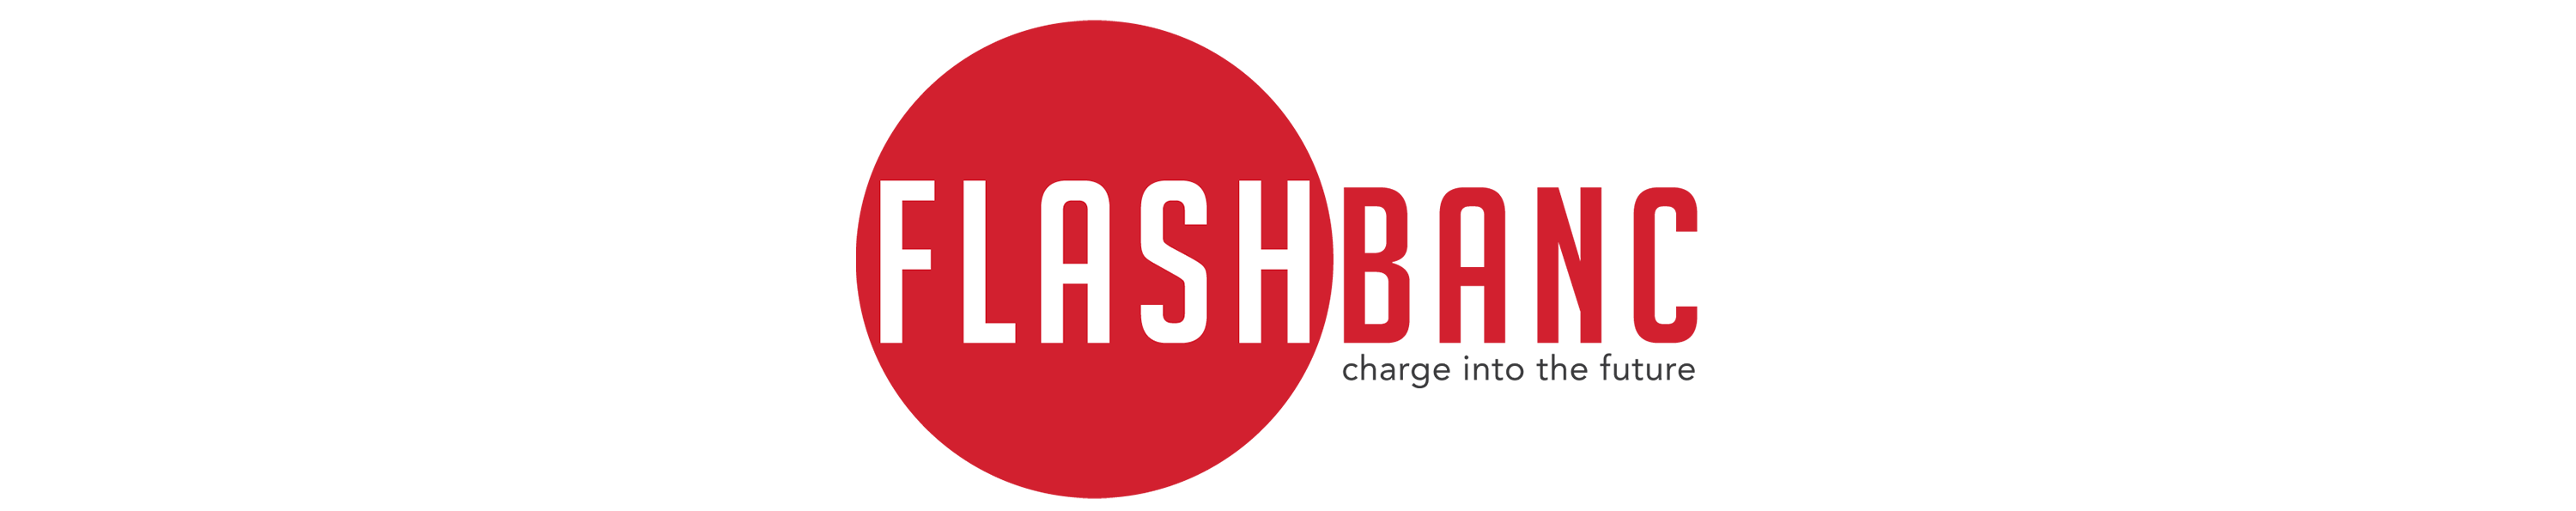 Flashbanc logo